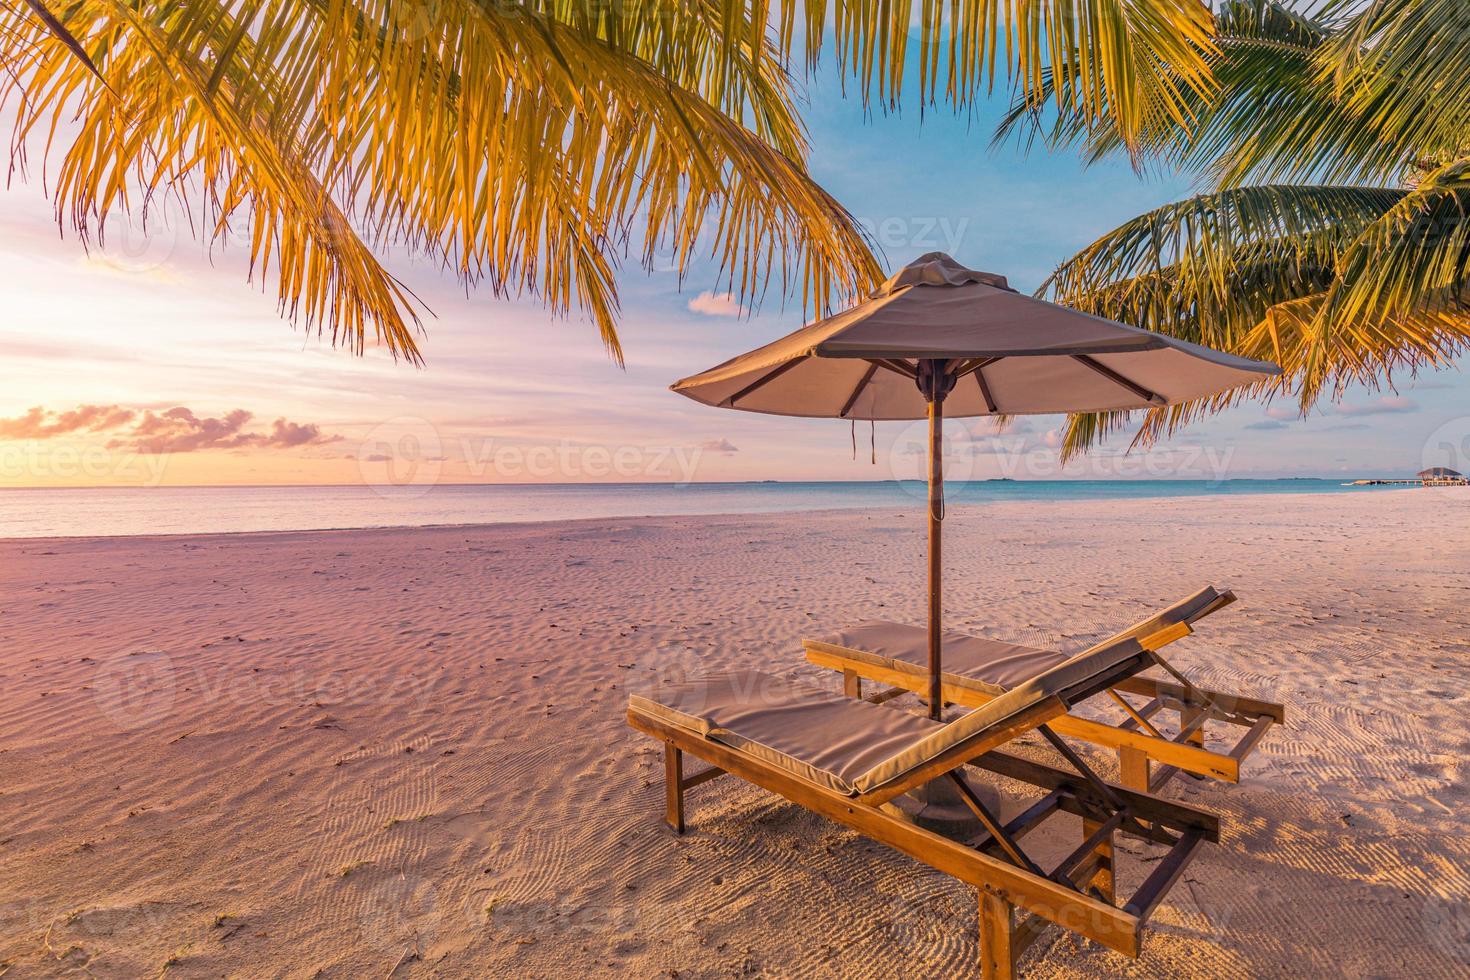 increíble playa de vacaciones. un par de sillas juntas junto a la pancarta del mar. concepto de luna de miel de vacaciones románticas de verano. paisaje de isla tropical. panorama costero tranquilo, horizonte costero de arena relajante, hojas de palma foto